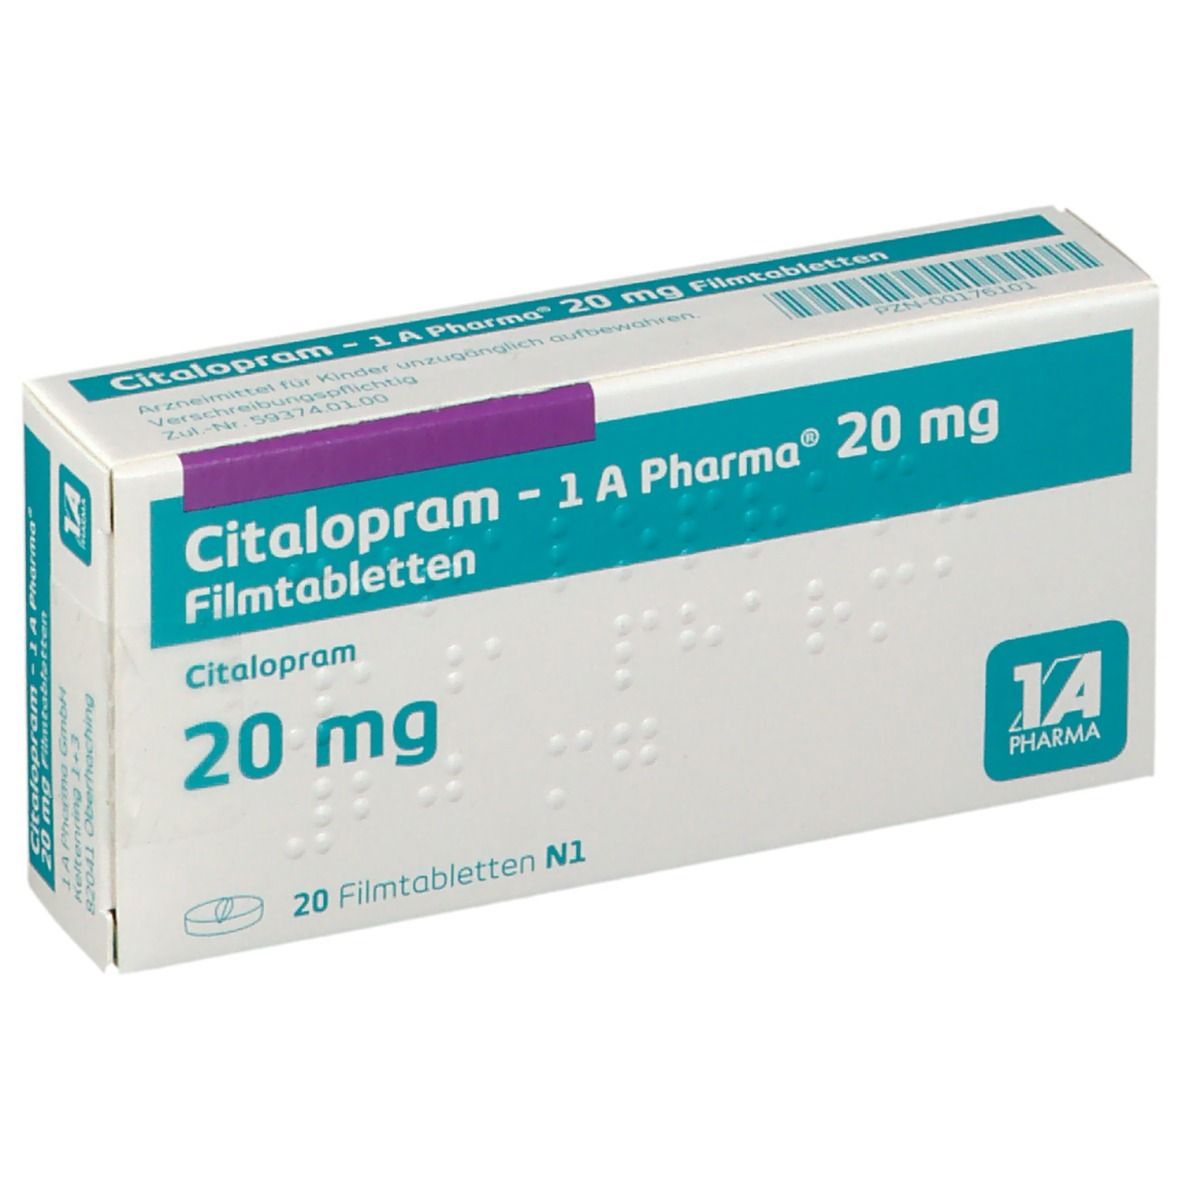 Citalopram 1A Pharma® 20Mg